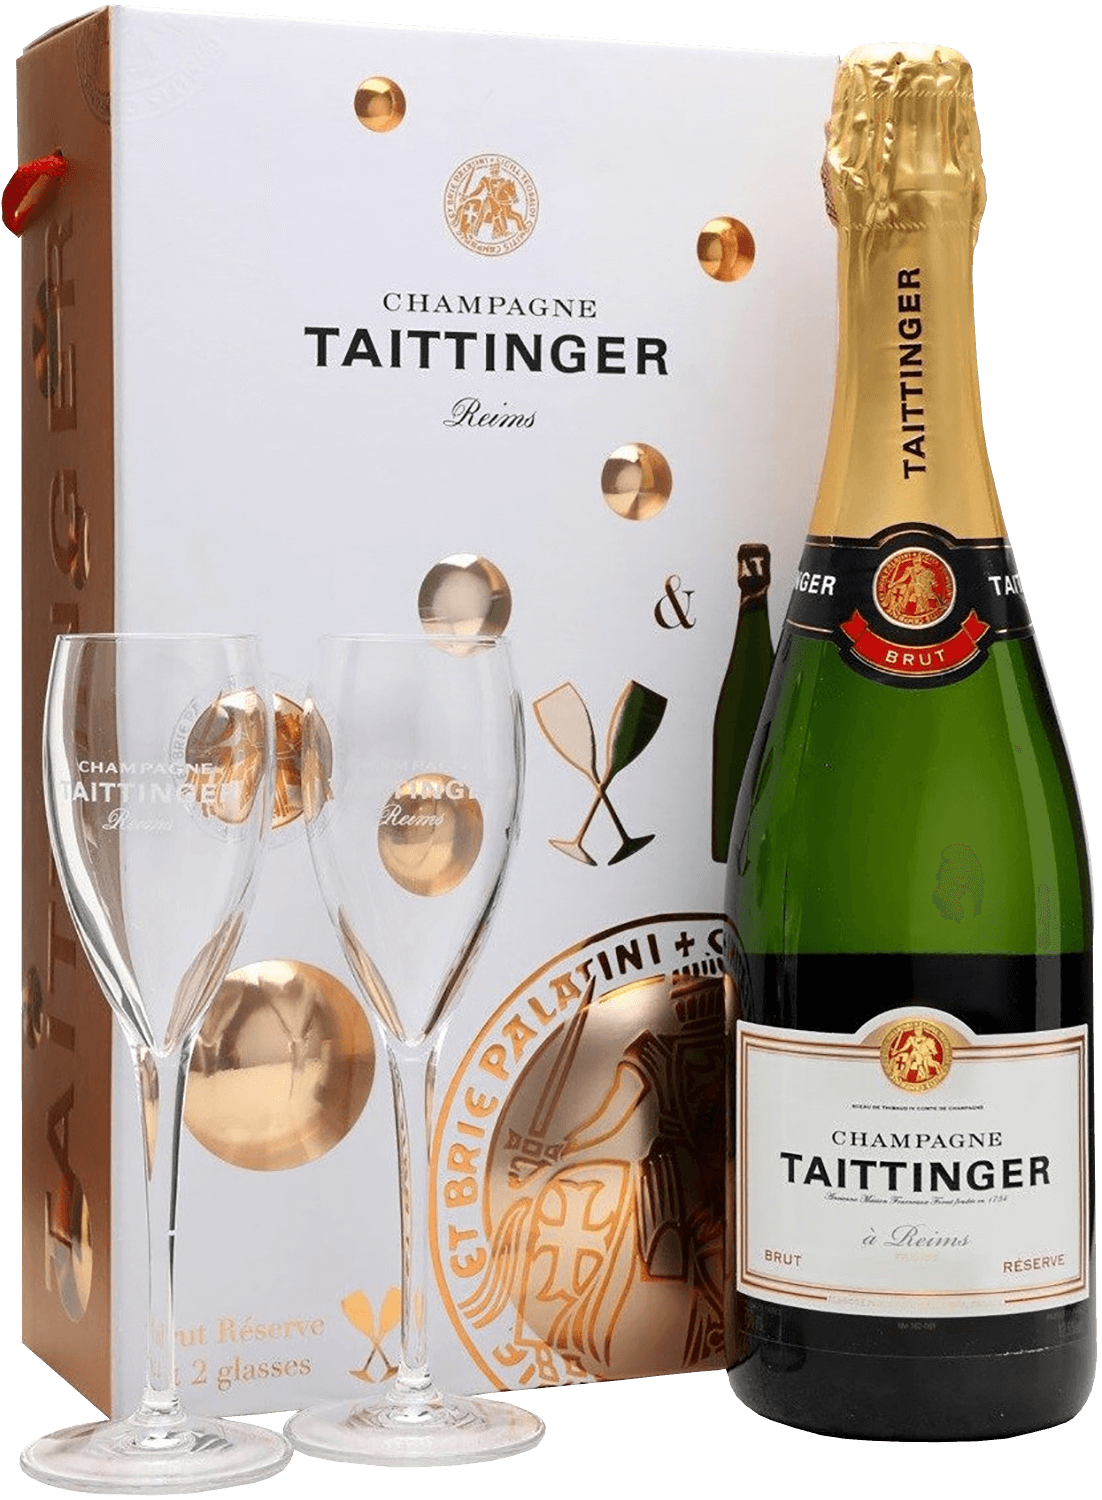 Taittinger Brut Reserve Champagne AOC (gift box) r de ruinart brut champagne aoc gift box